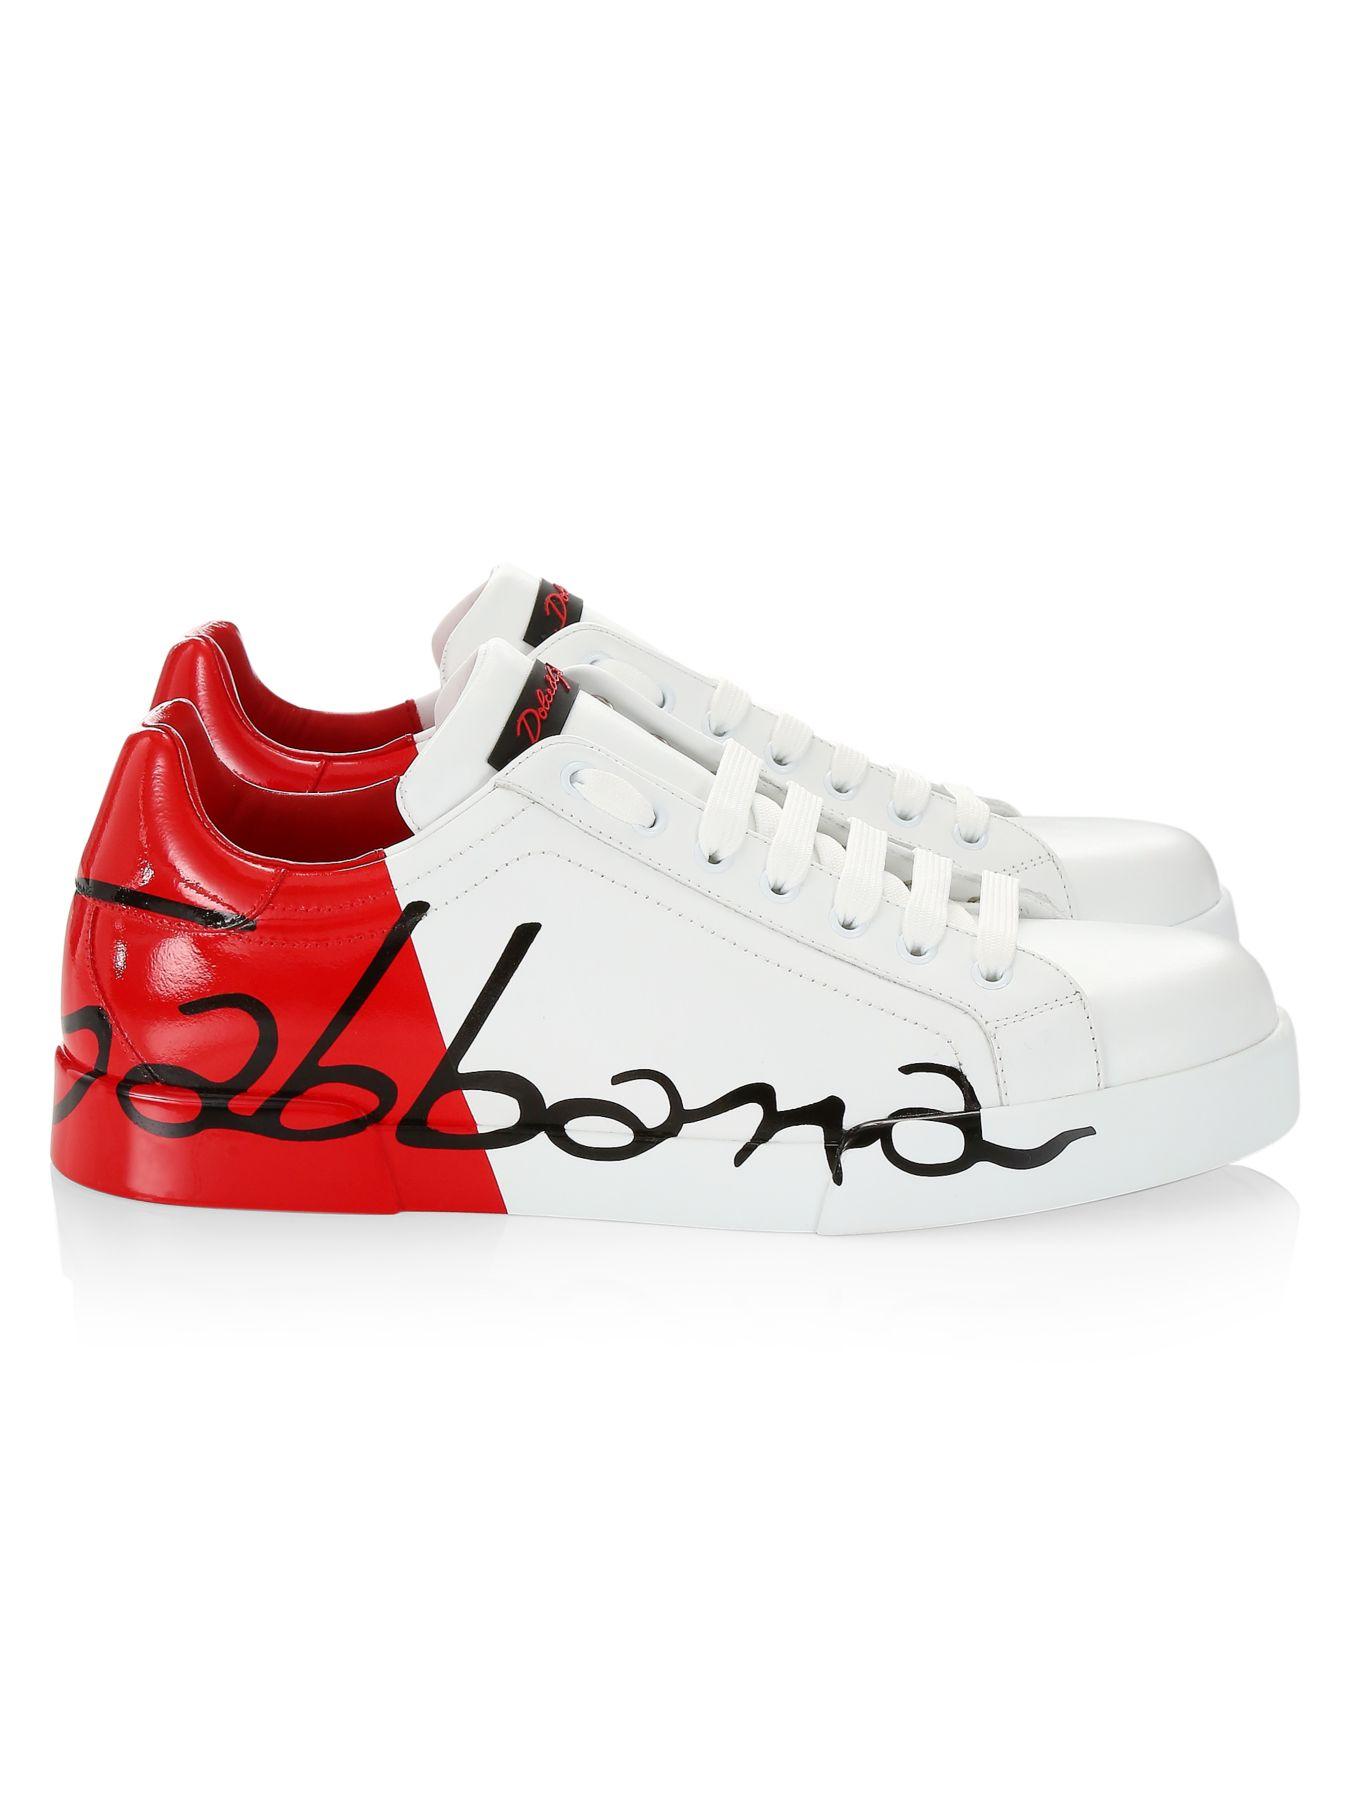 Dolce & Gabbana Portofino Script Leather Sneakers in White Red (Red ...